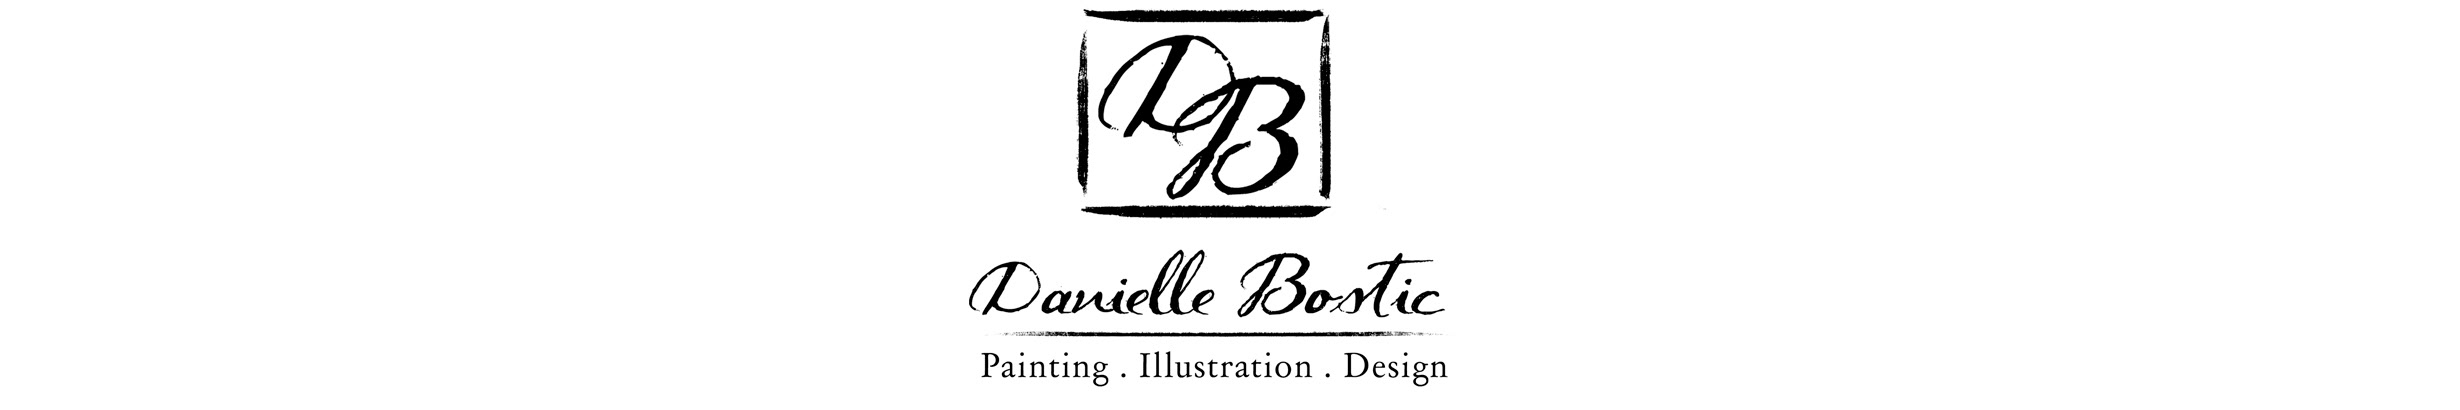 Danielle Bostic's profile banner